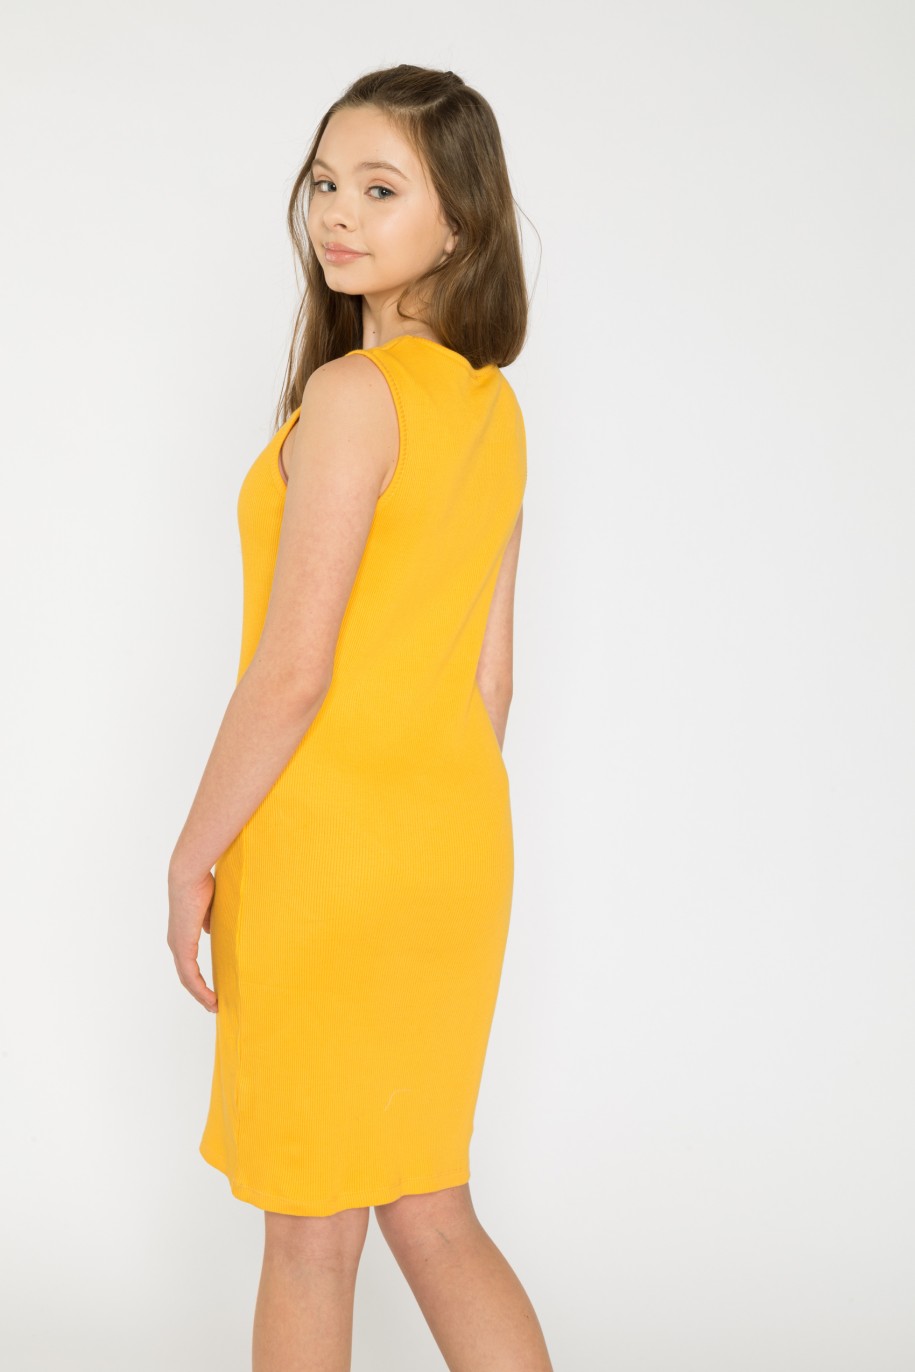 Żółta krótka sukienka z wycięciami - 34639